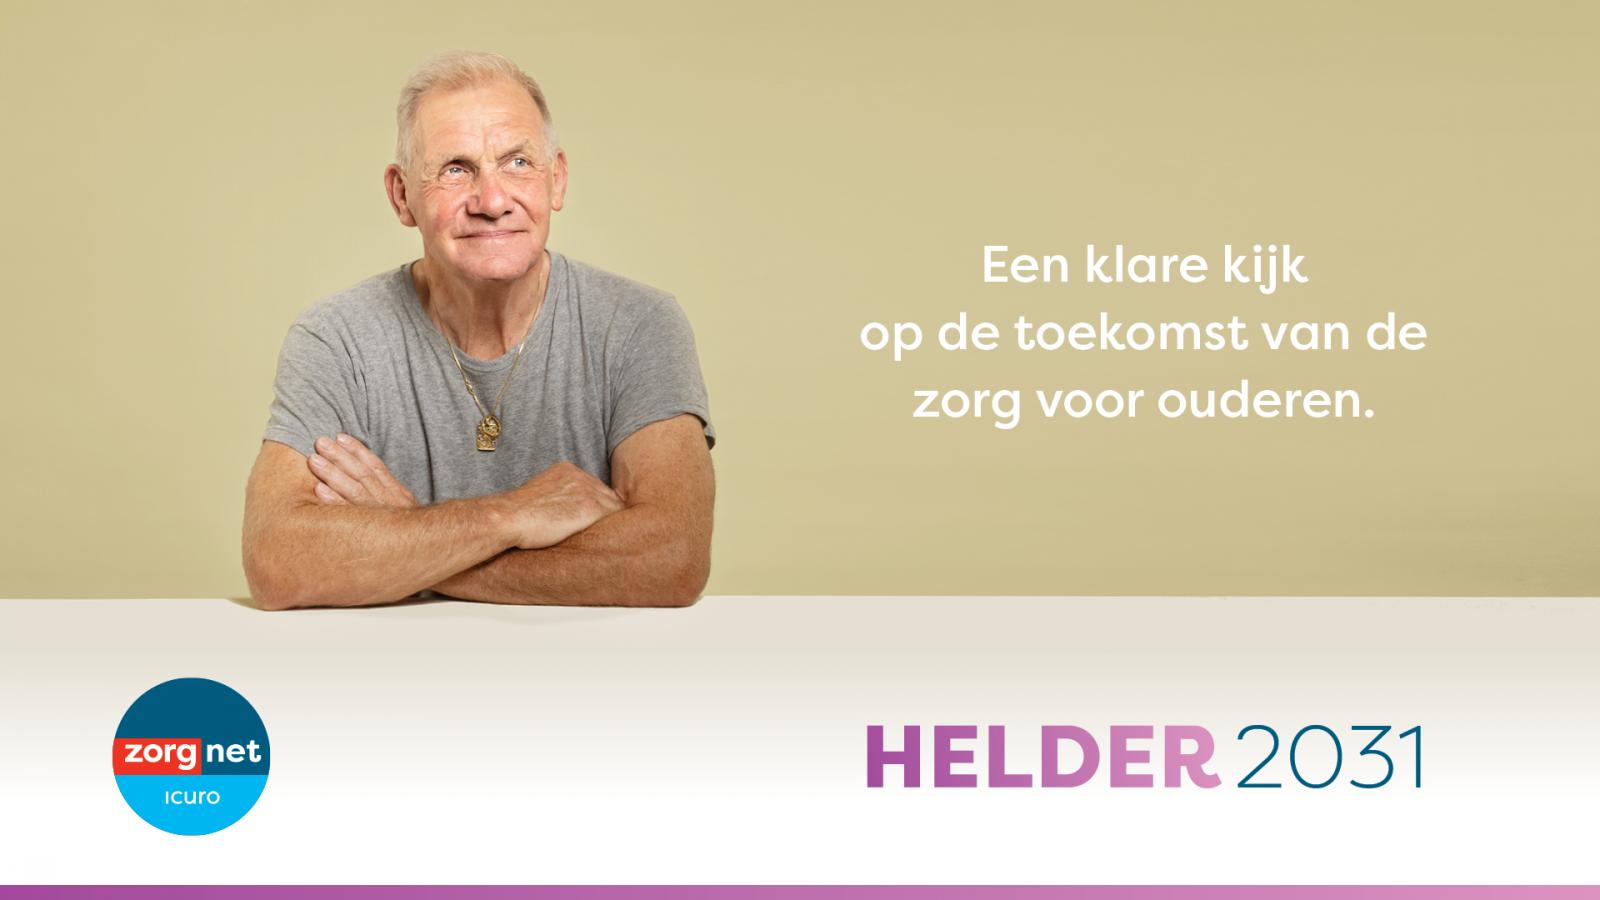 Campagne Helder 2031